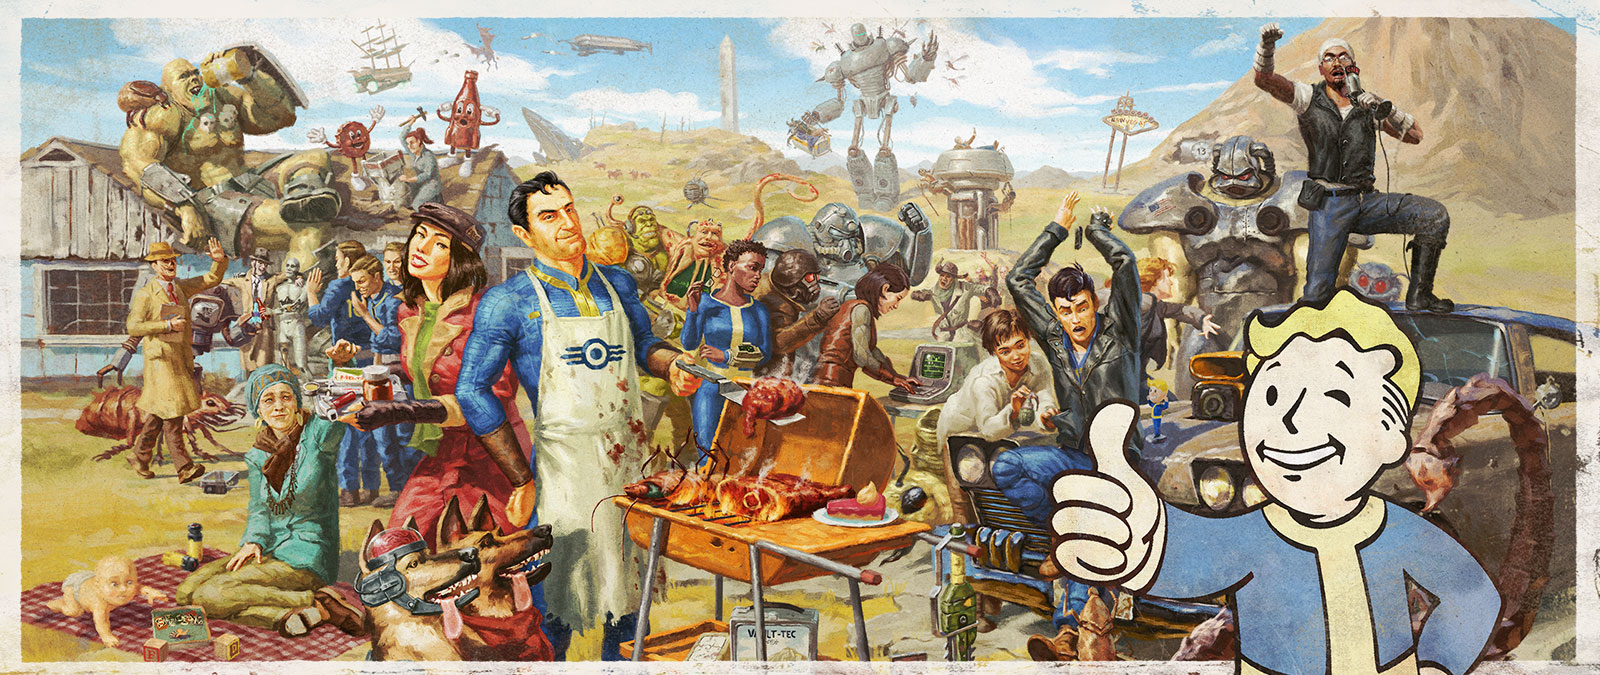 Fallout 시리즈의 다양한 캐릭터가 건전한 가족 바비큐를 위해 모입니다.